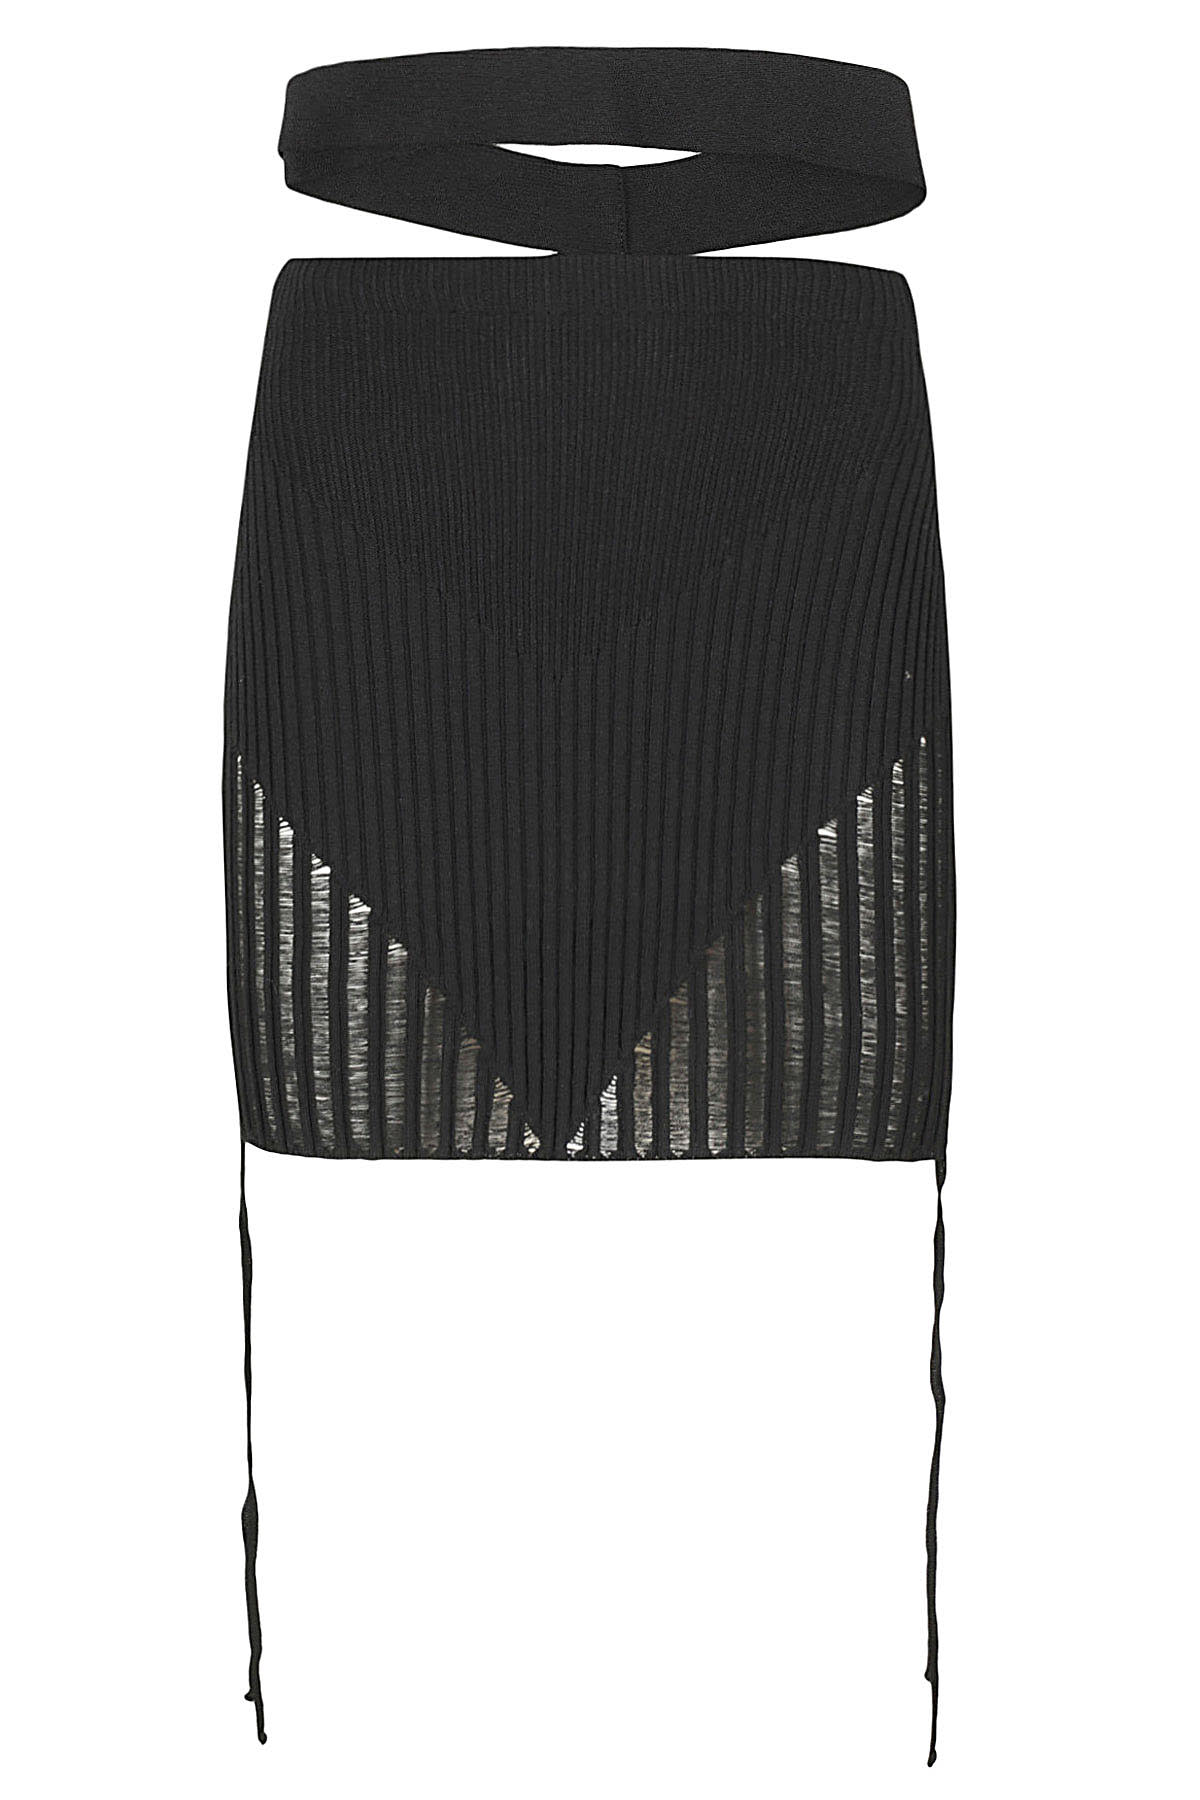 ANDREADAMO ANDREĀDAMO Ribbed Knit Mini Skirt